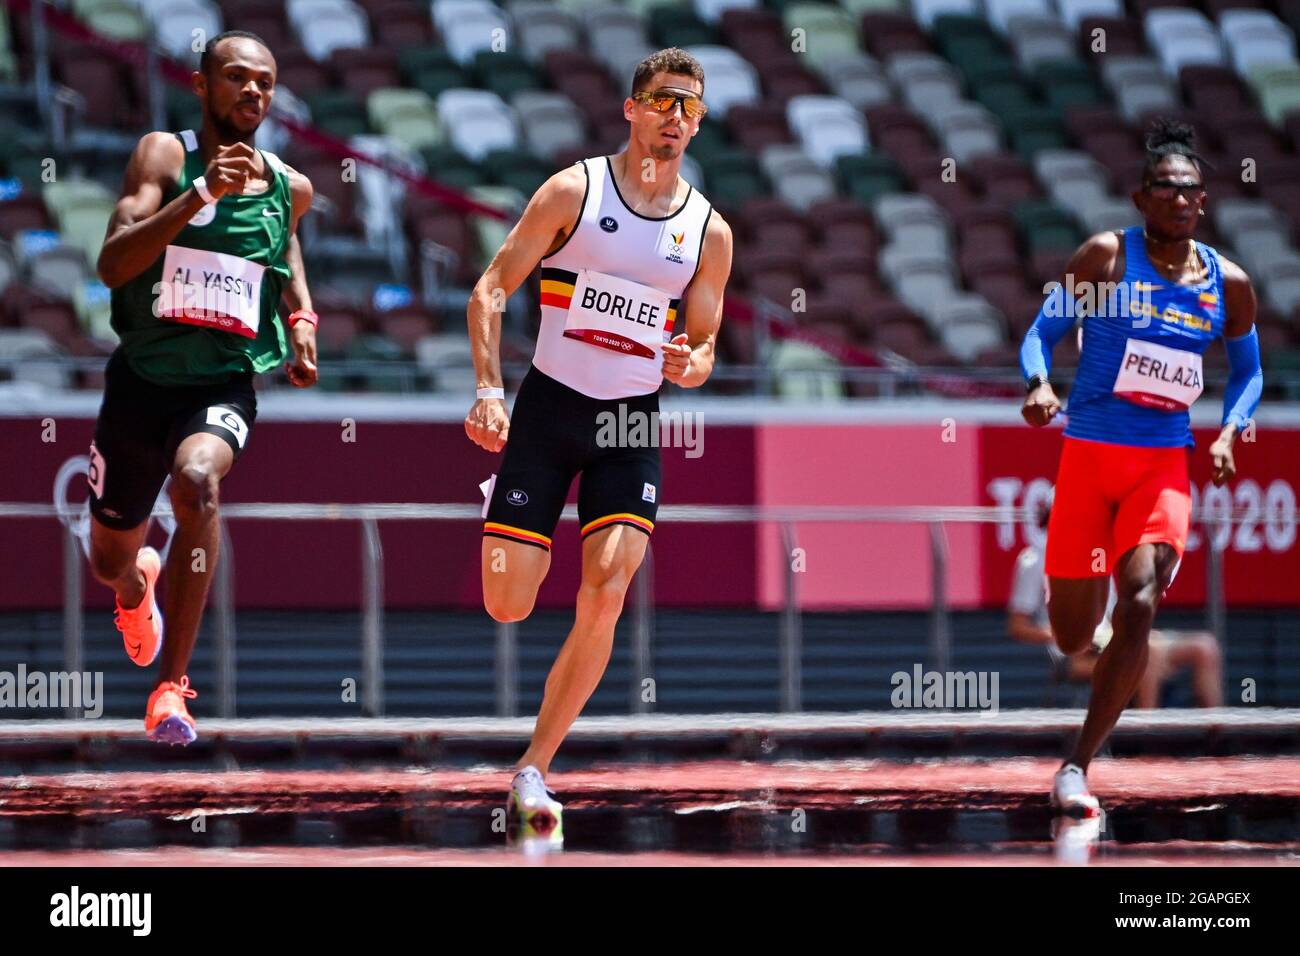 Arabie Saoudite Mazen Moulan Al Yassin, Belge Kevin Borlee et colombien Alejandro Perlaza photographiés en action pendant les épreuves de la course a de 400m pour hommes Banque D'Images